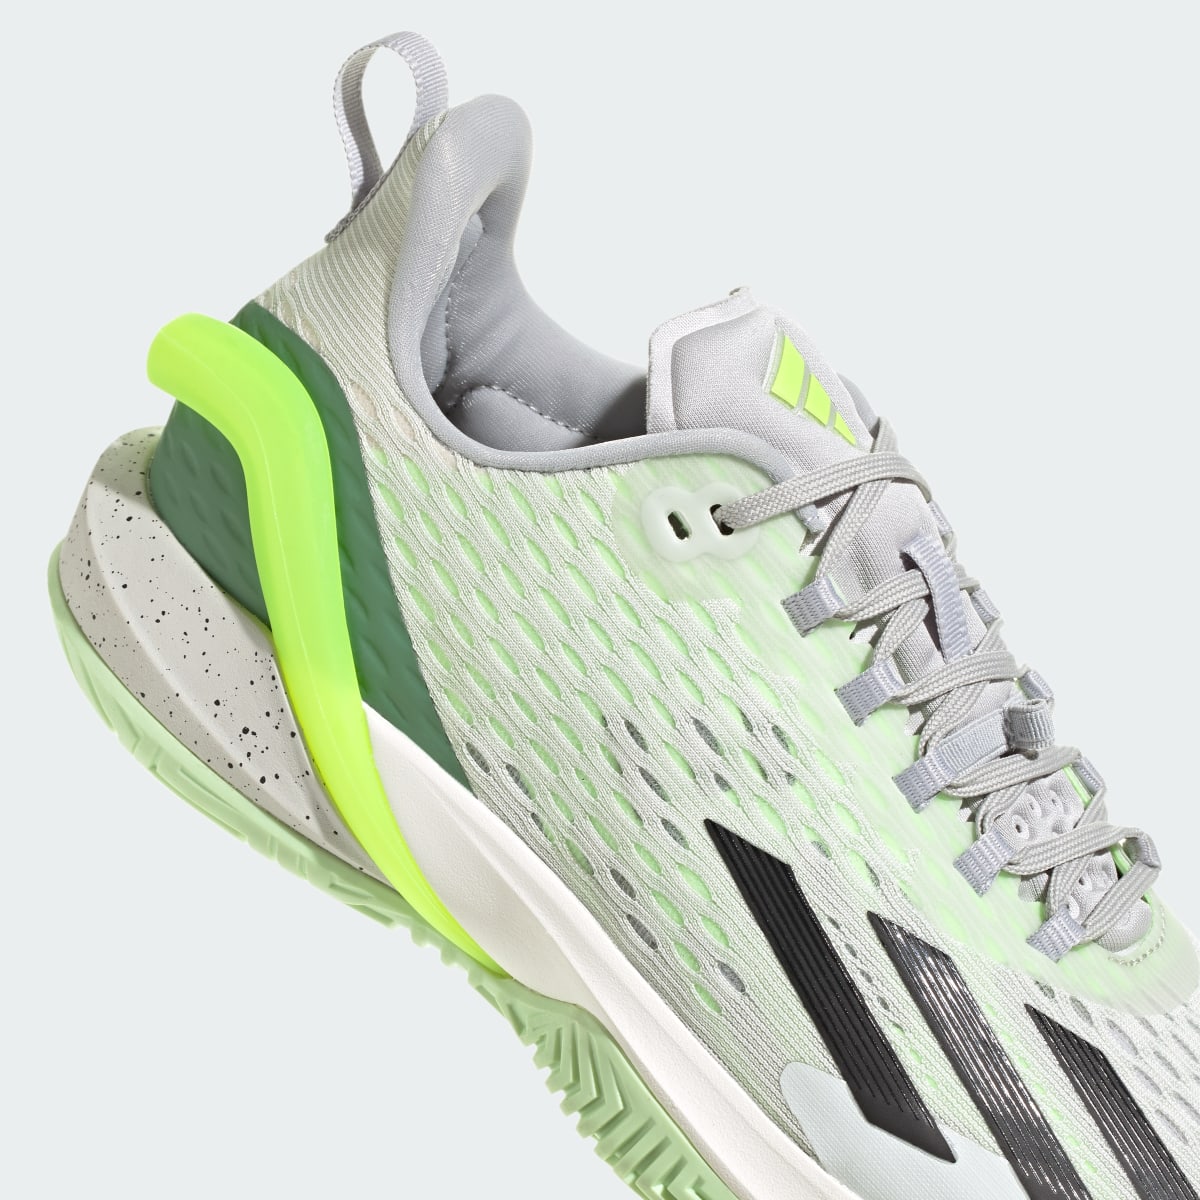 Adidas adizero Cybersonic Tennis Shoes. 9